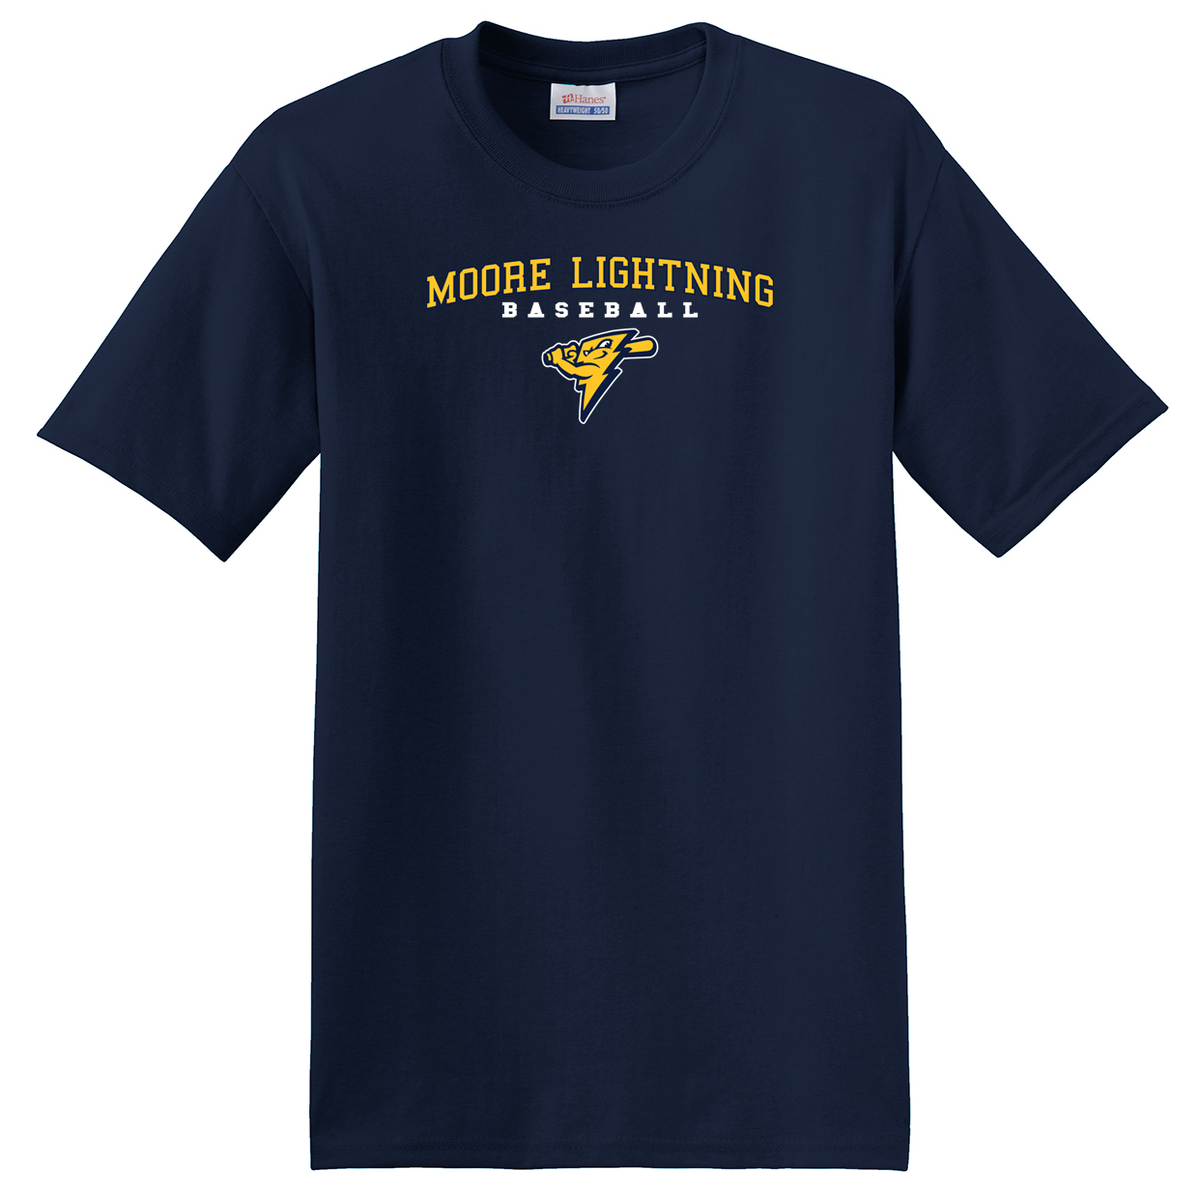 Moore Lightning Baseball  T-Shirt